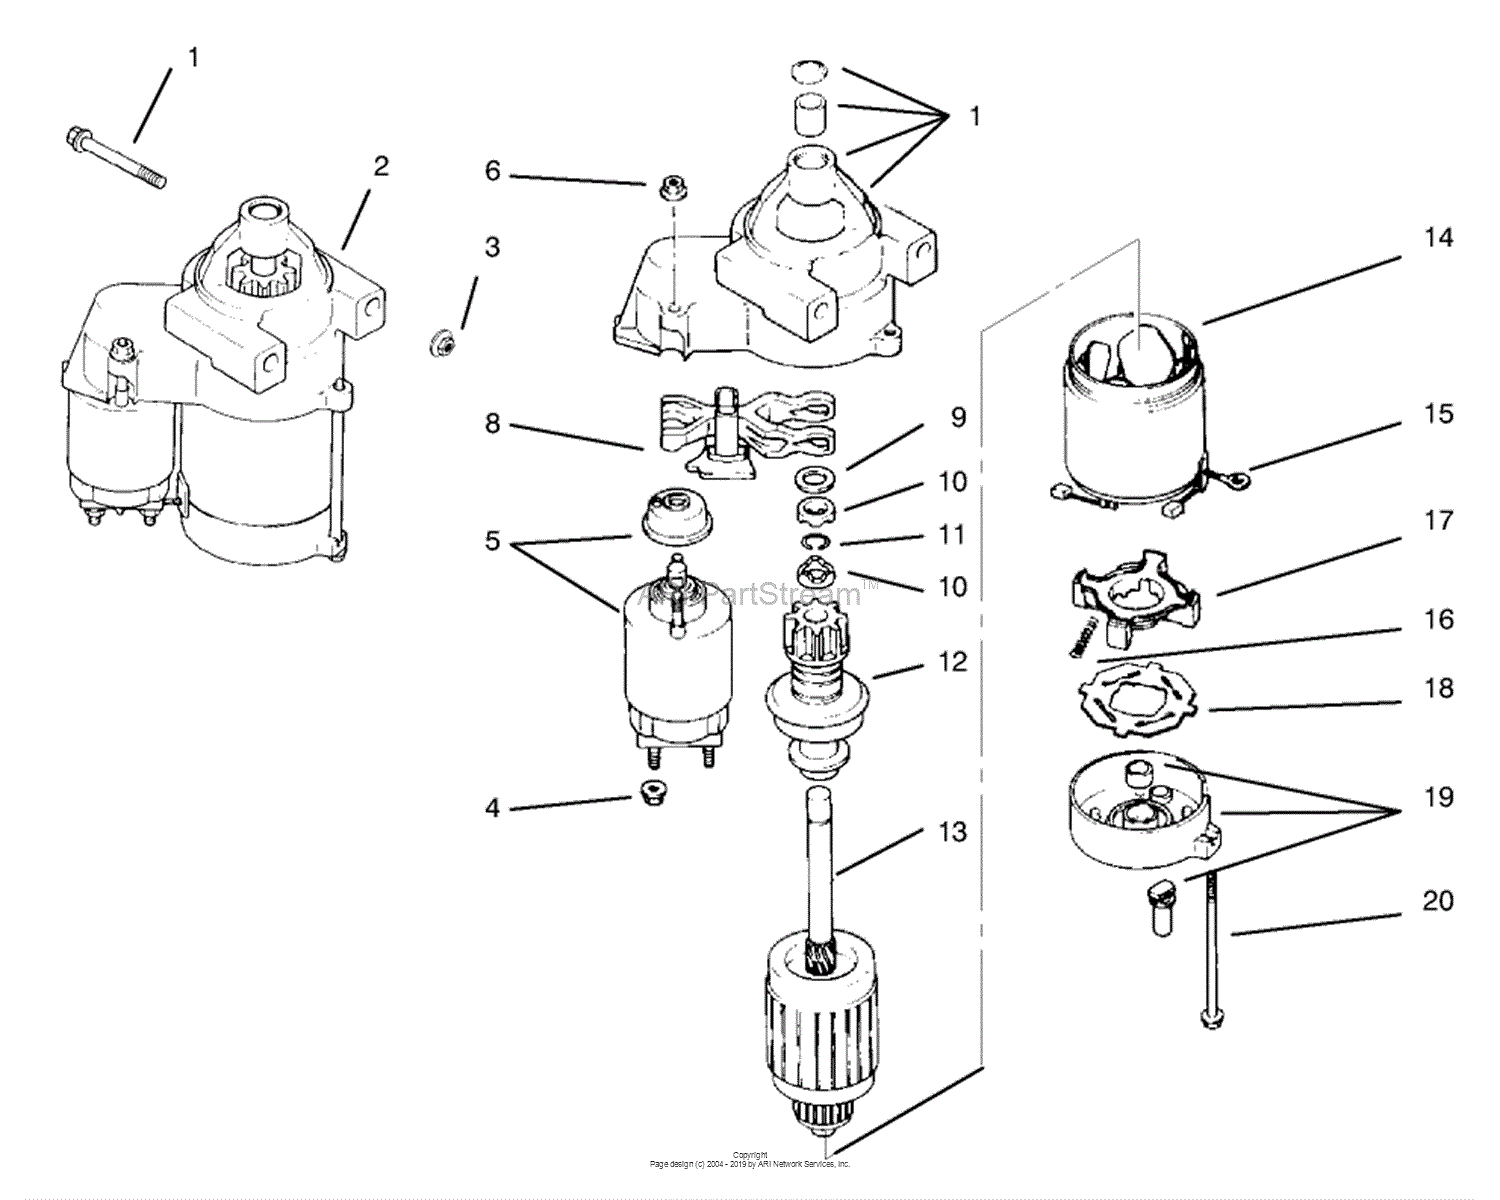 kohler cv18s wiring diagram